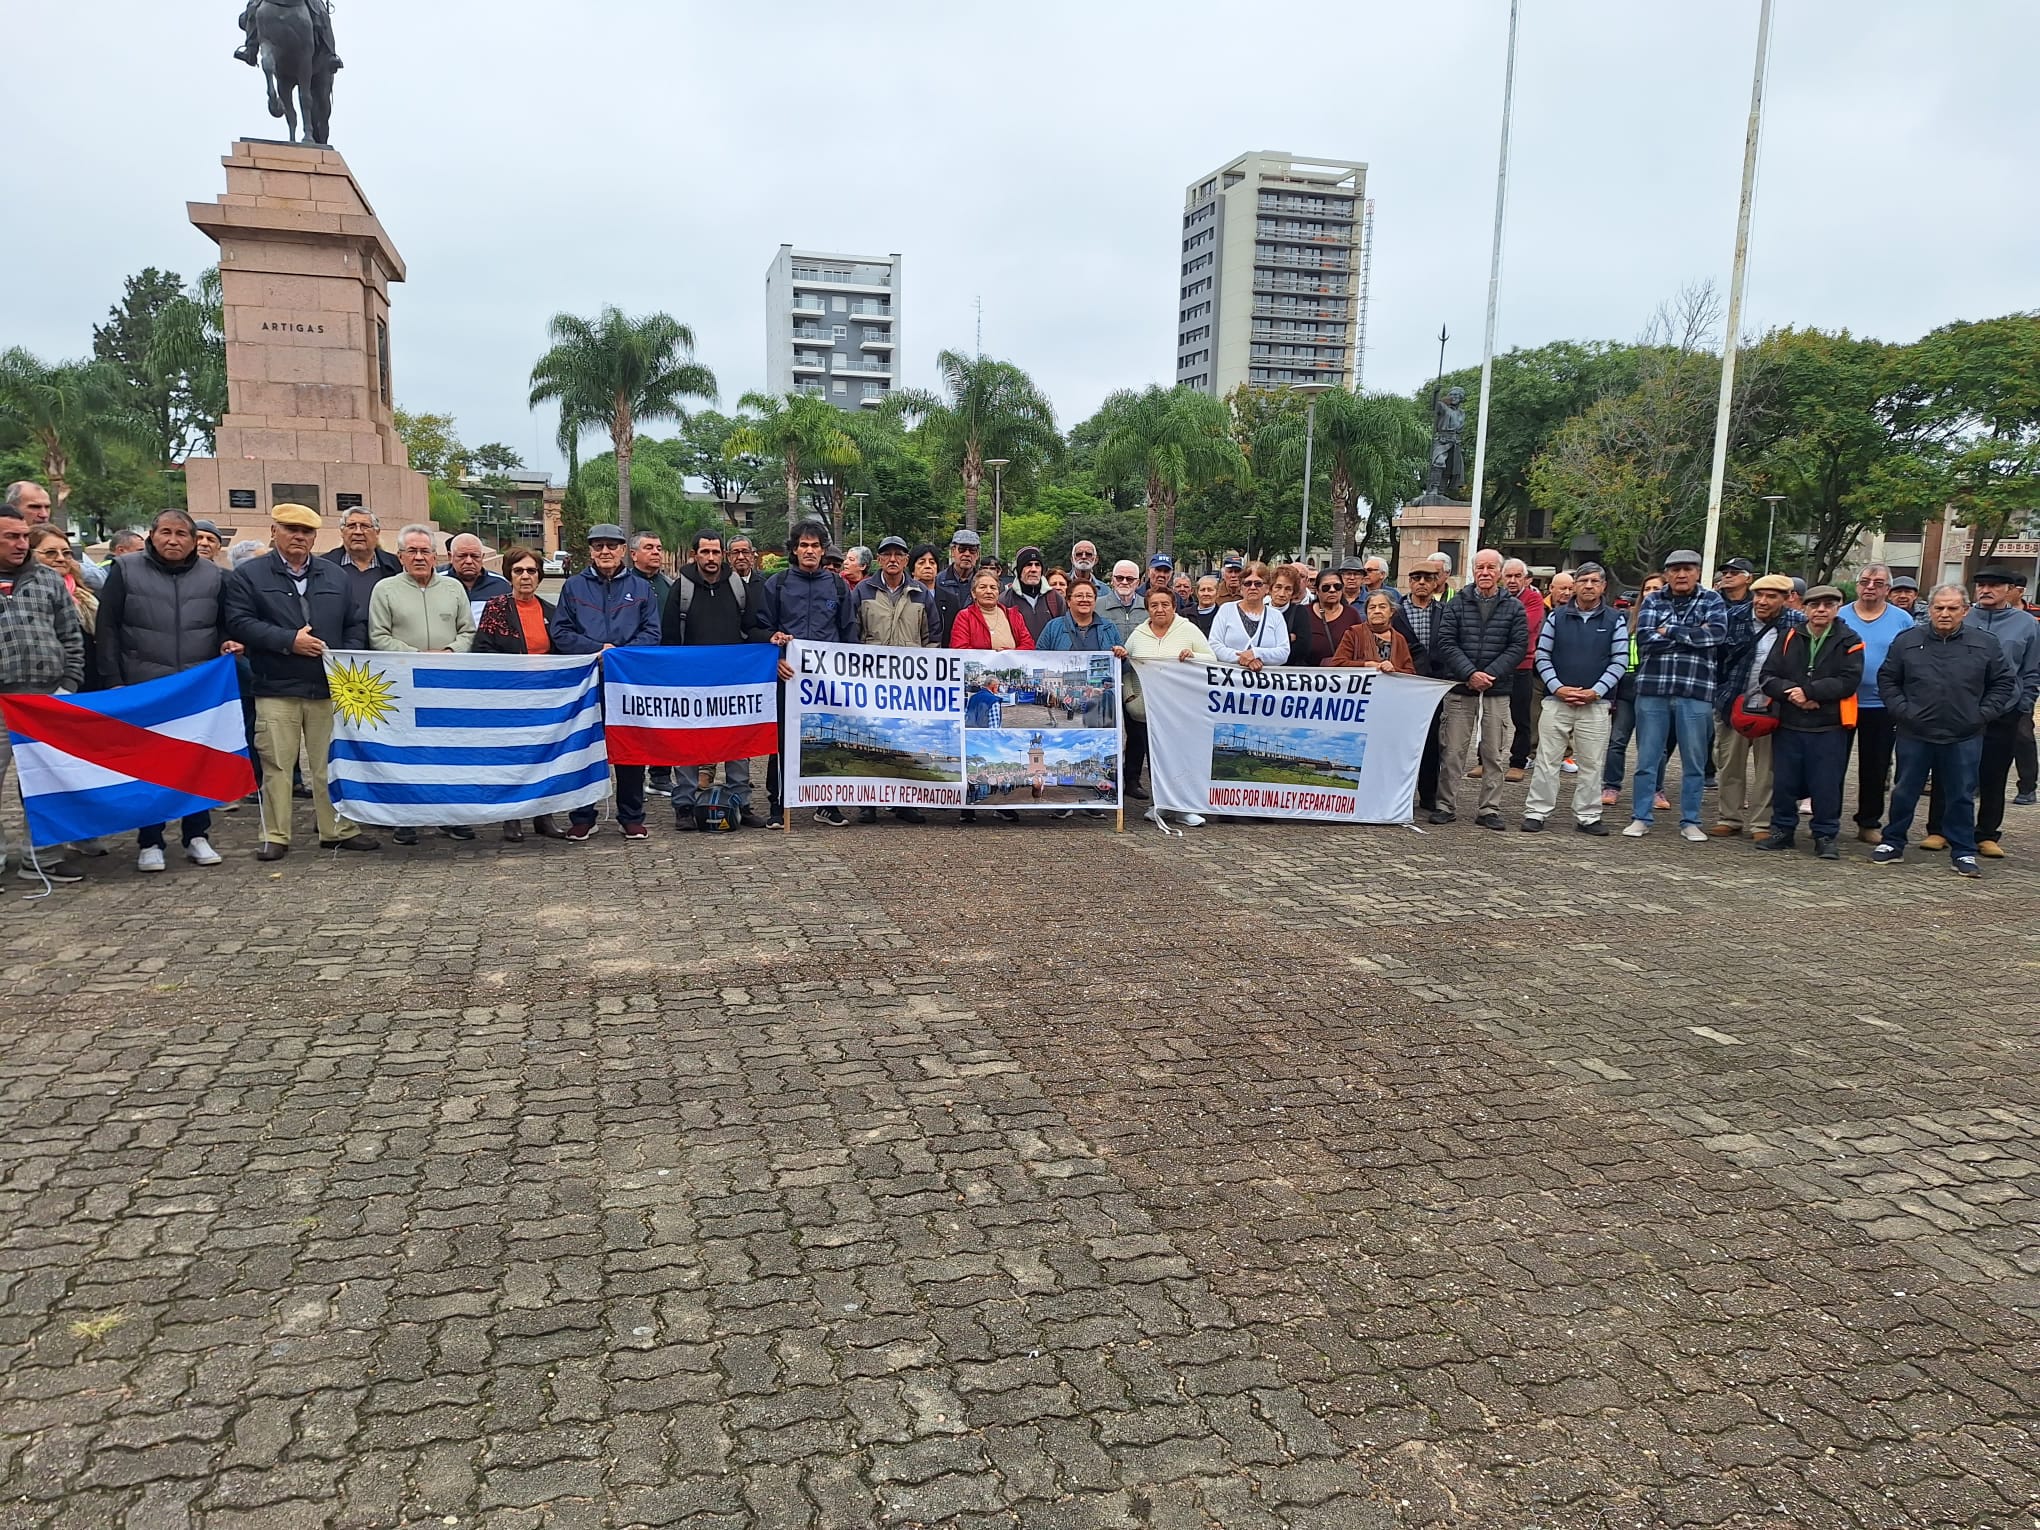 Ex obreros de Salto Grande afinan detalles del próximo viaje a Montevideo en junio